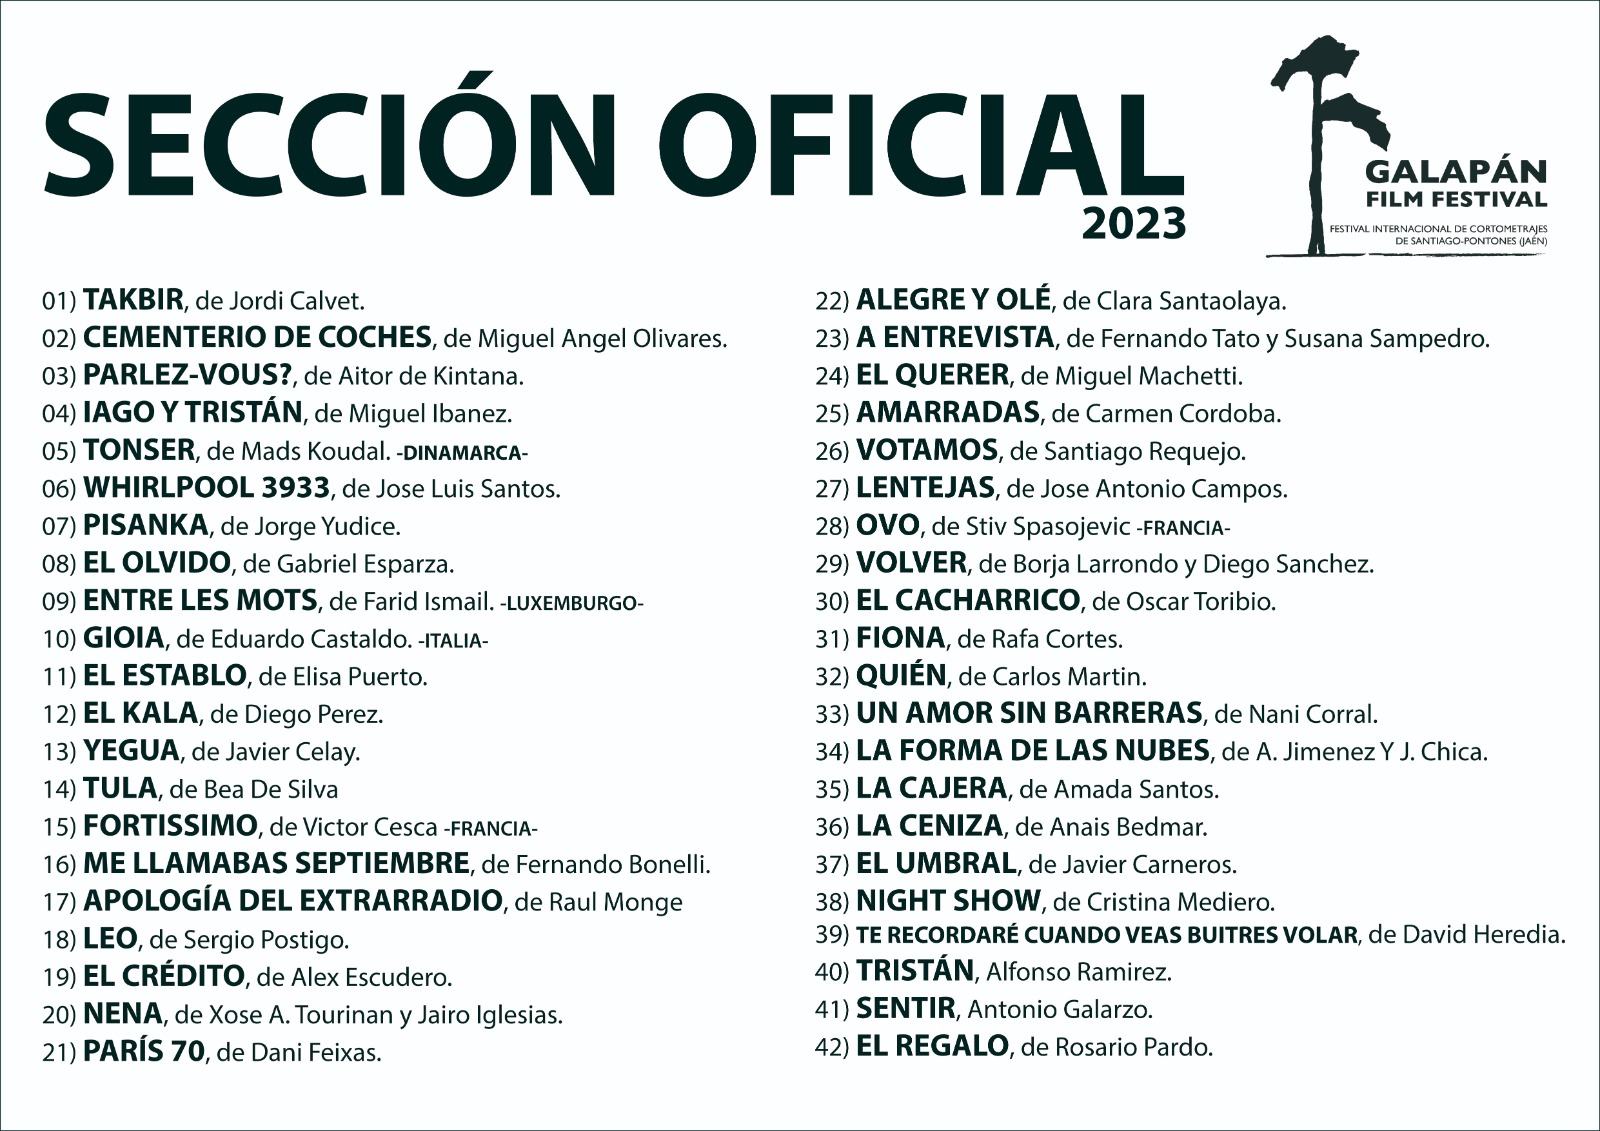 Galapán Film Festival Selección Oficial 2023